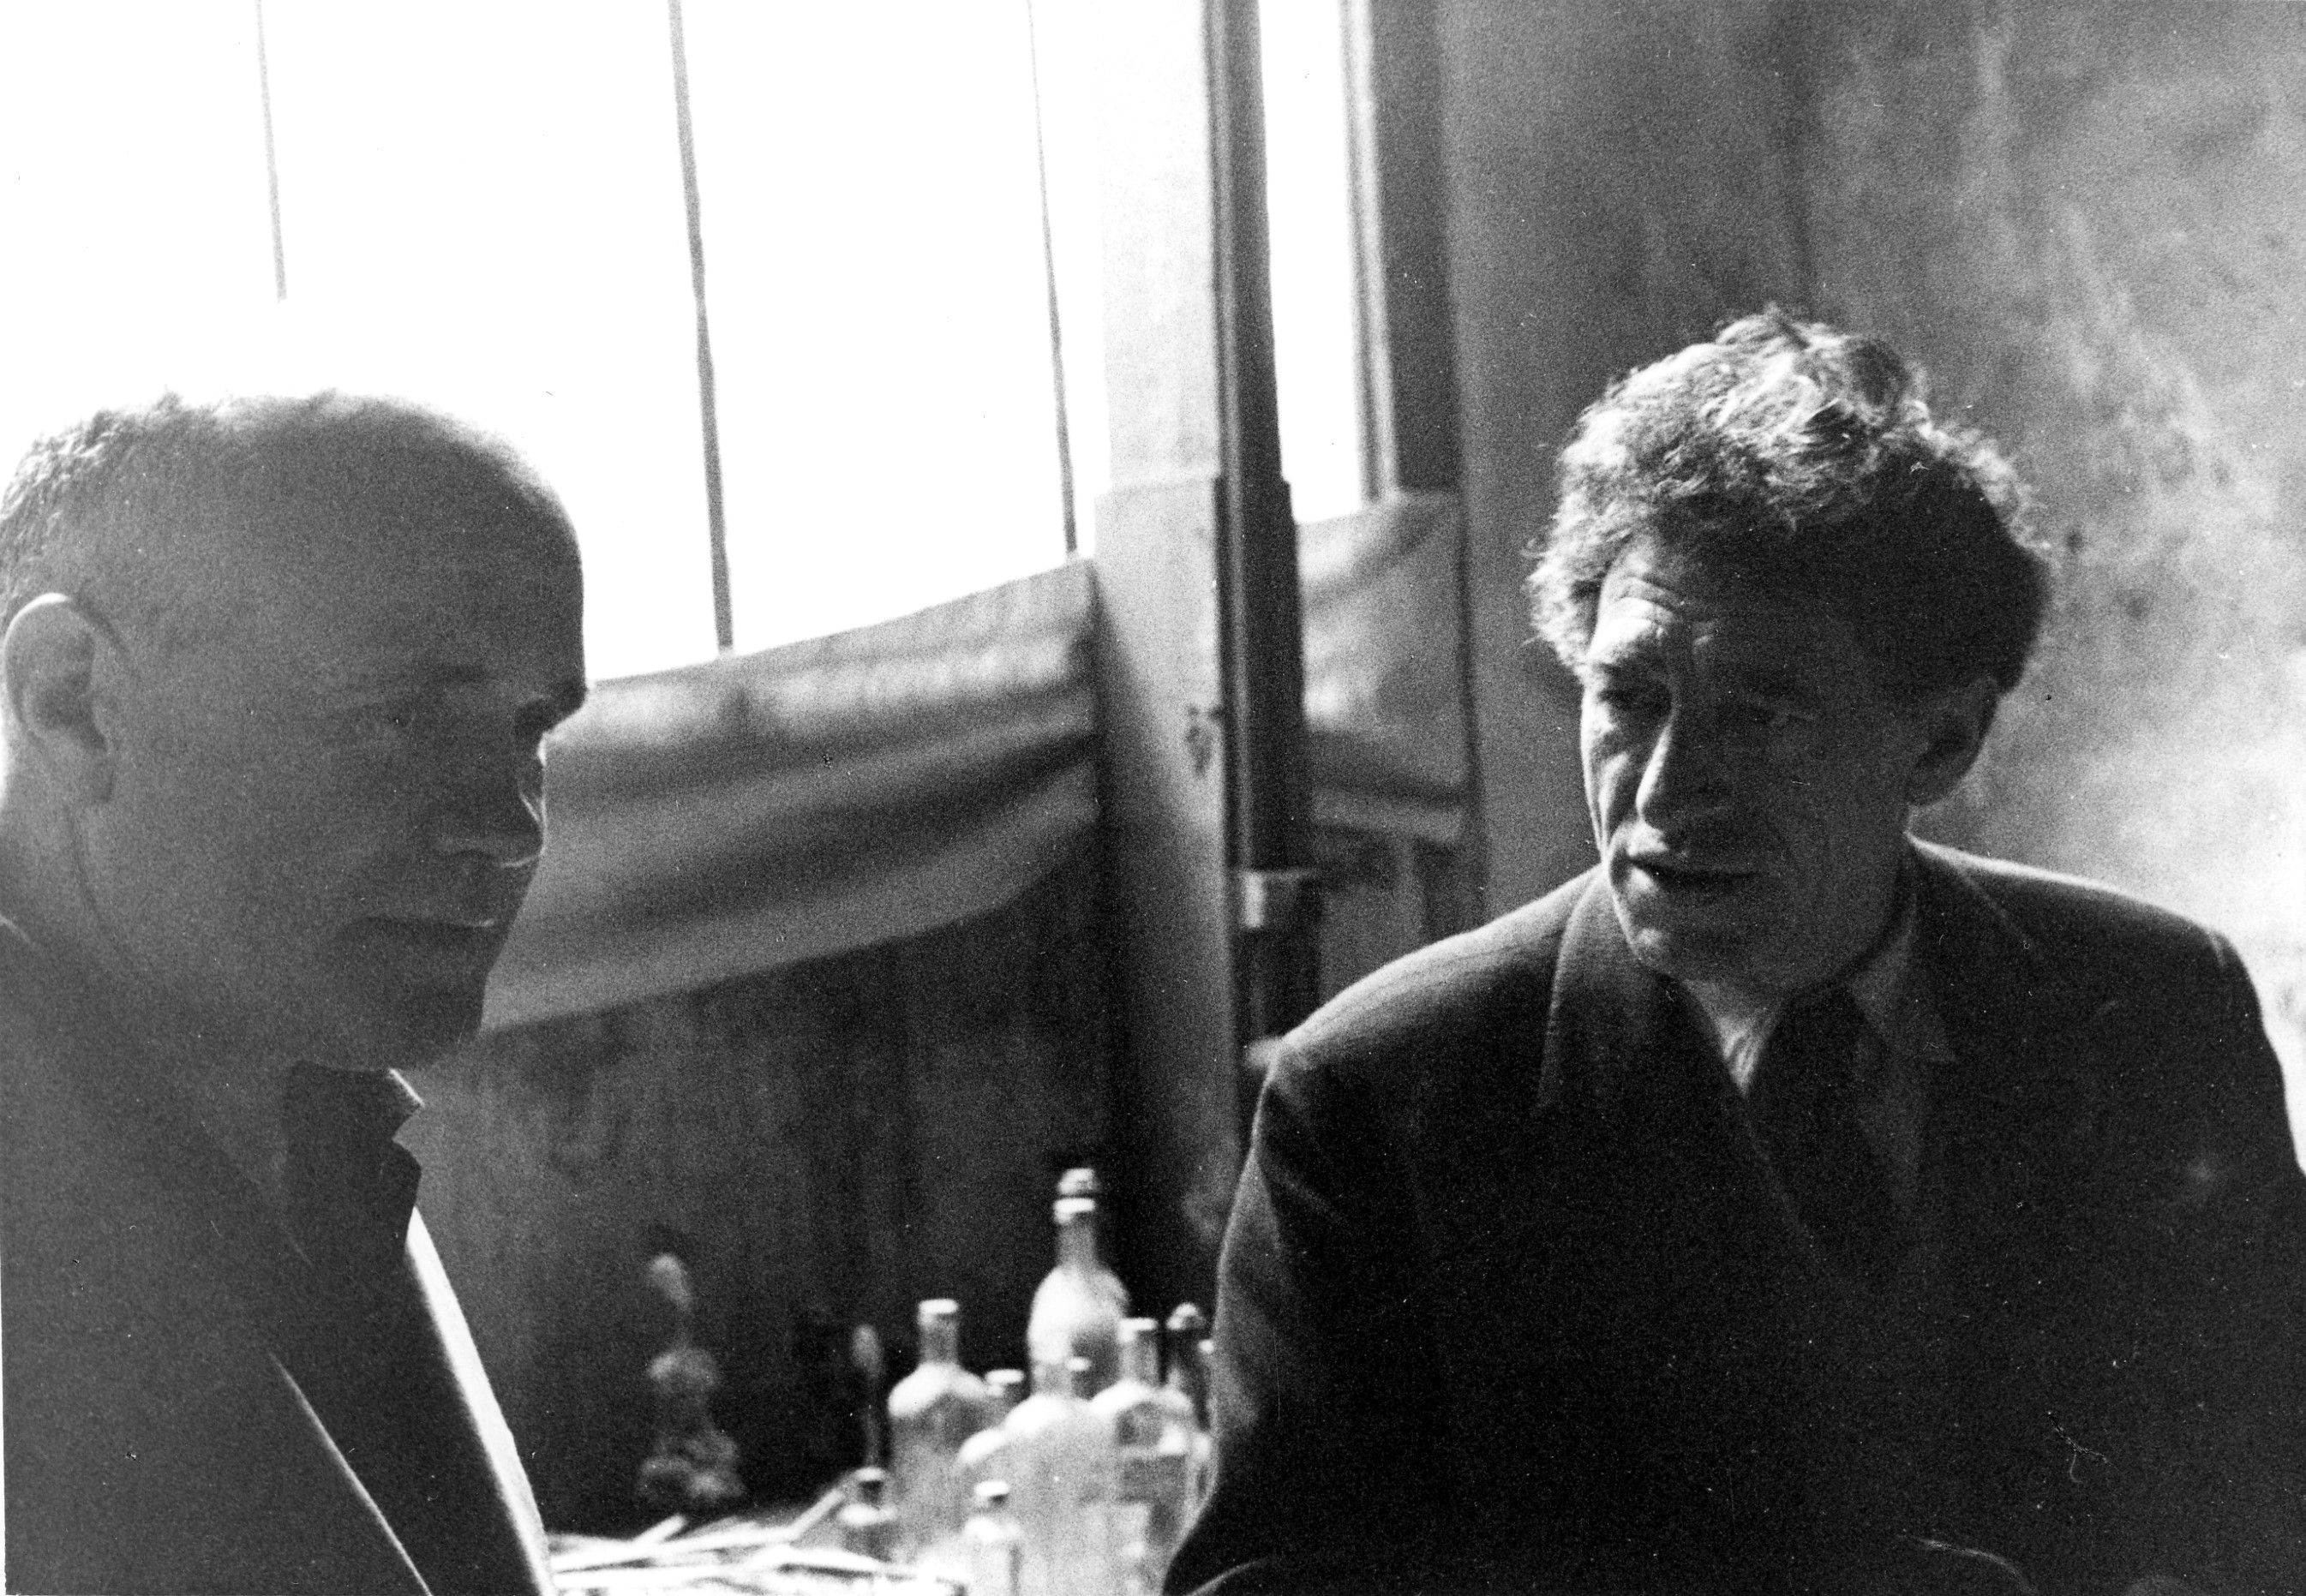 Alberto Giacometti in mostra a Parigi - immagine 24